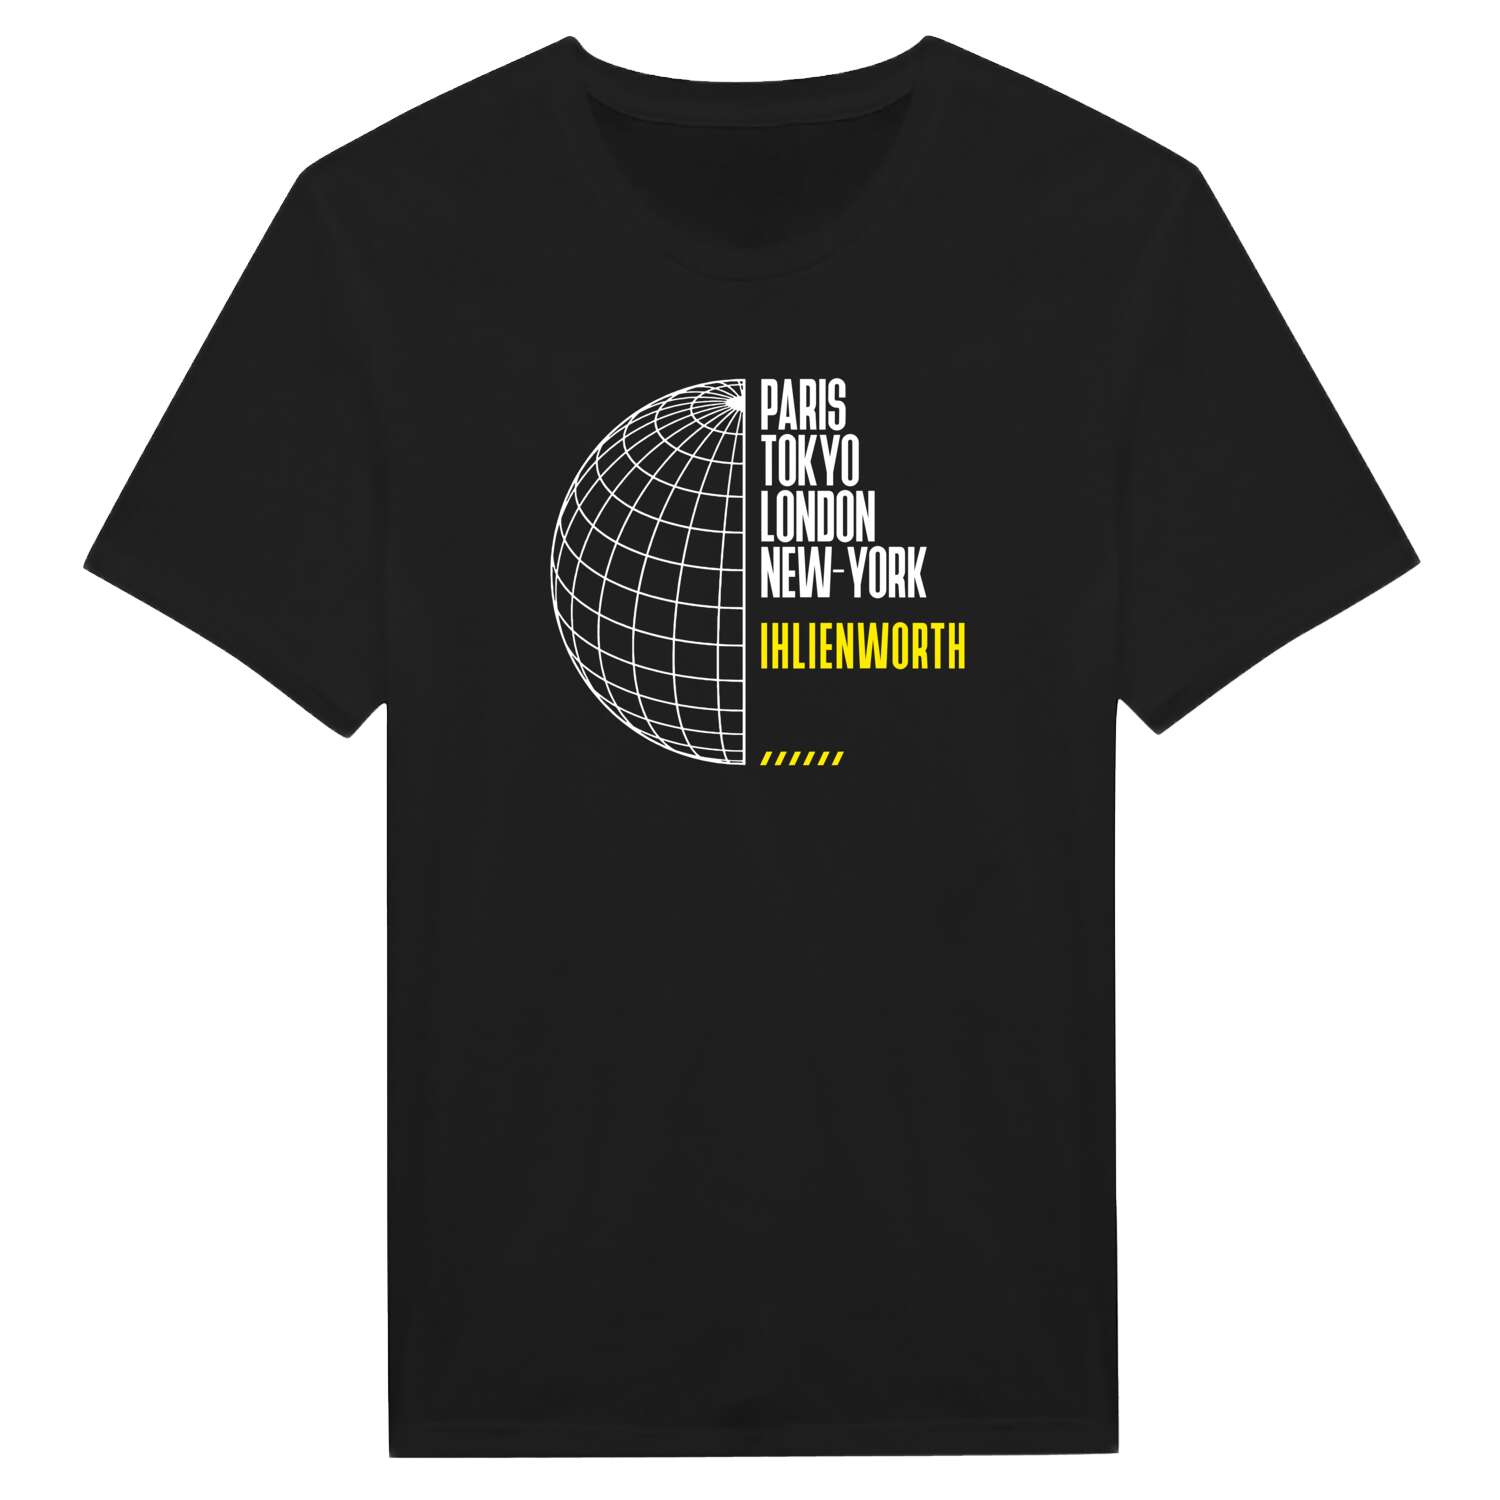 Ihlienworth T-Shirt »Paris Tokyo London«